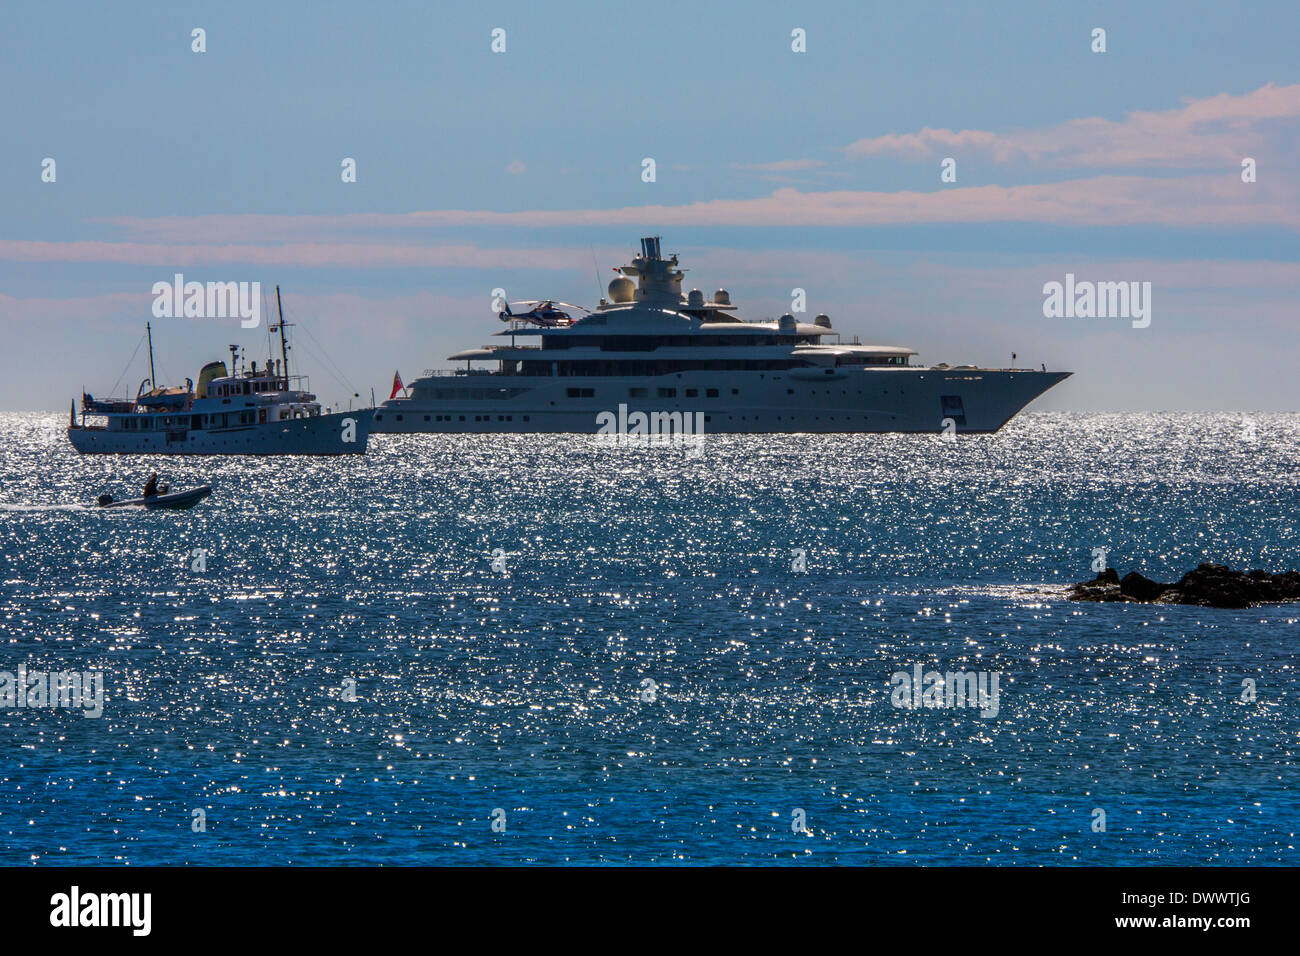 Luxus-Yachten in der Nähe von St. Tropez an der Frech-Riviera in der Region Côte d ' Azur im Süden Frankreichs. Stockfoto